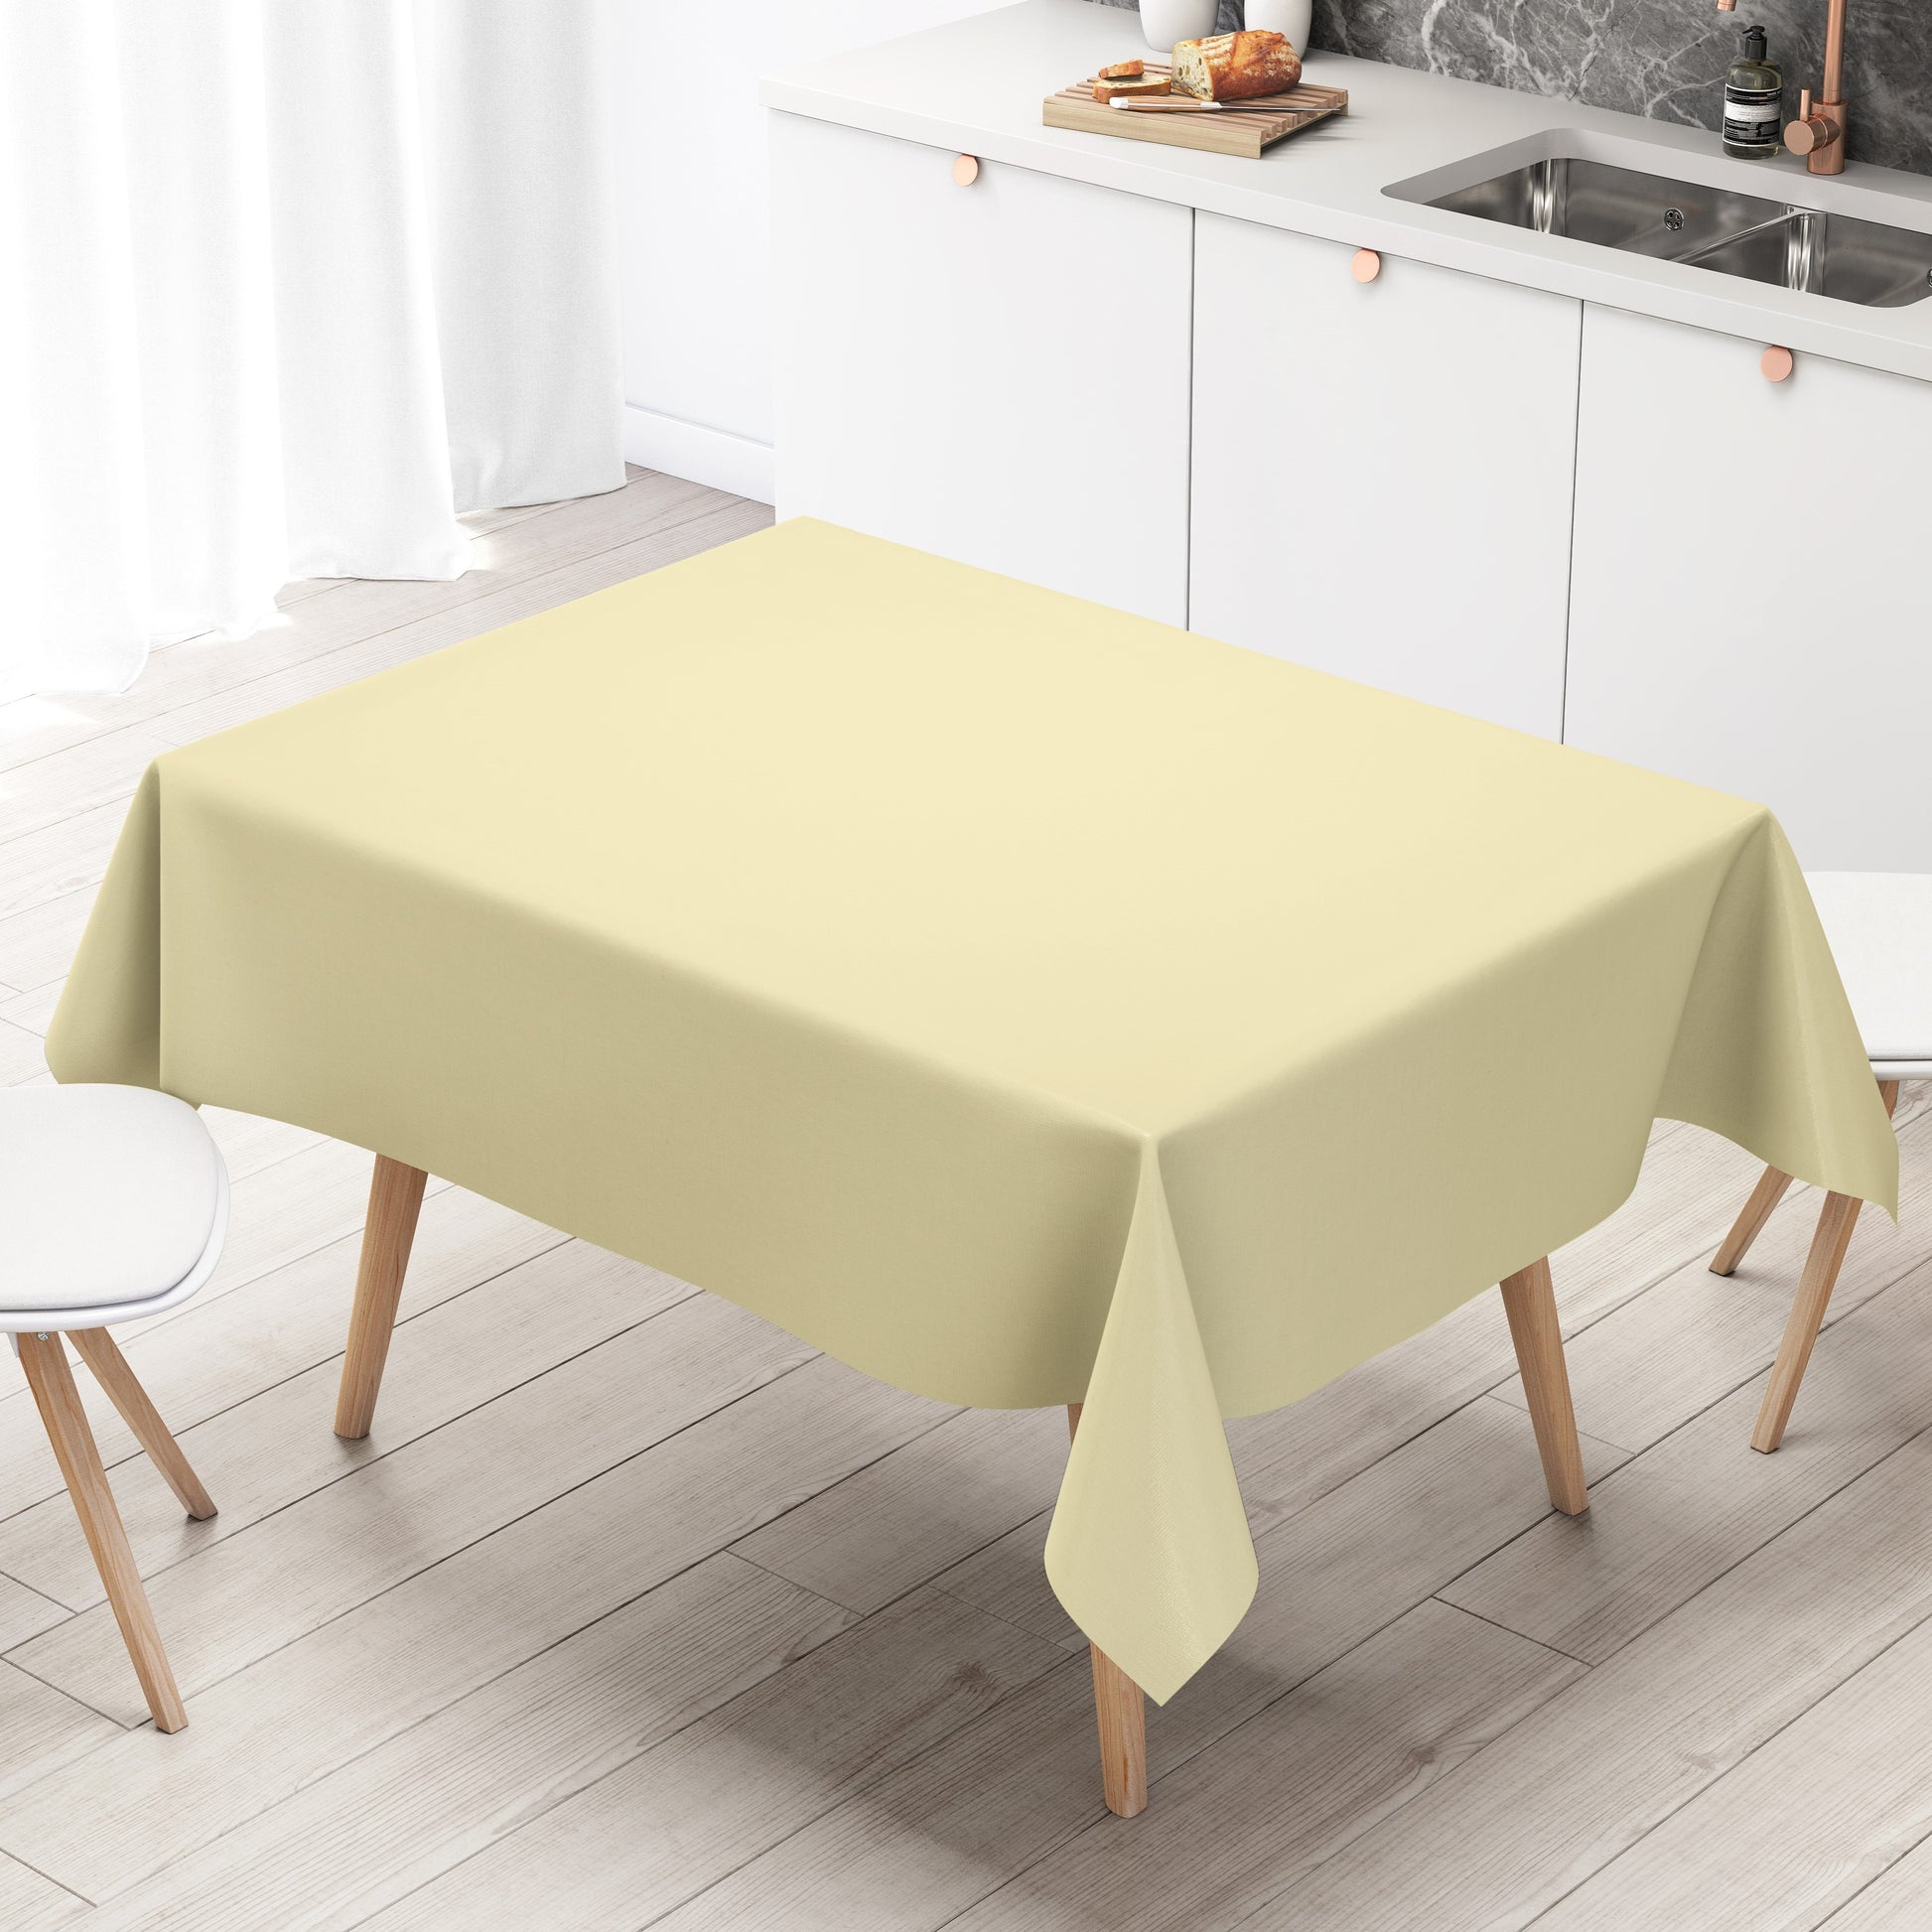 Wachstuch Tischdecke – unifarben creme beige 7 champagner uni einfarbig